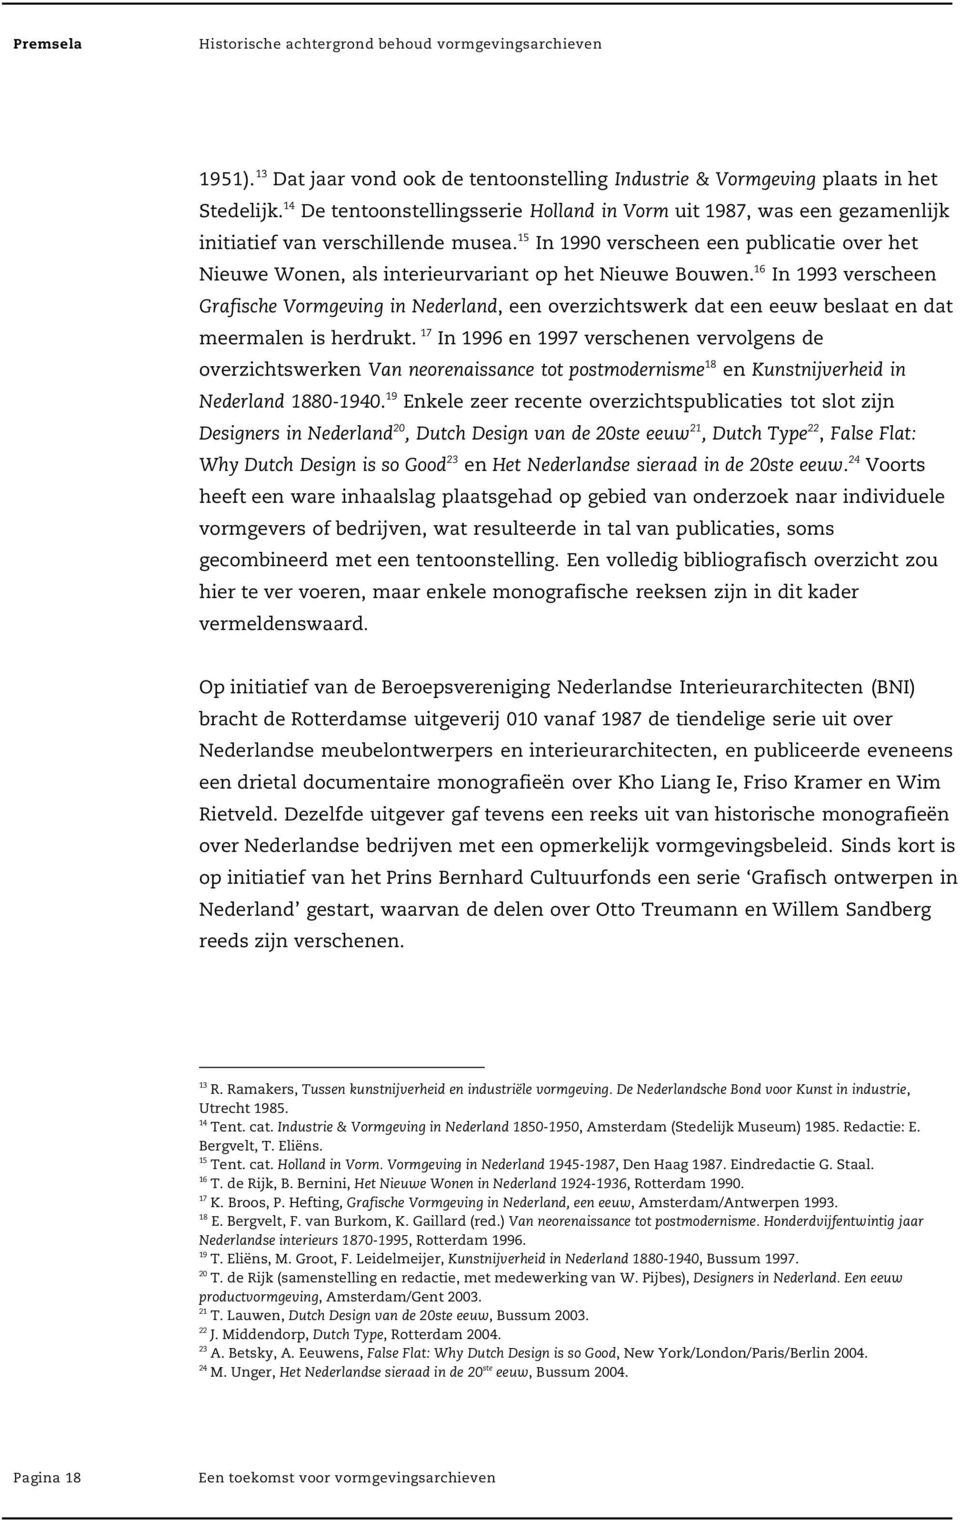 15 In 1990 verscheen een publicatie over het Nieuwe Wonen, als interieurvariant op het Nieuwe Bouwen.